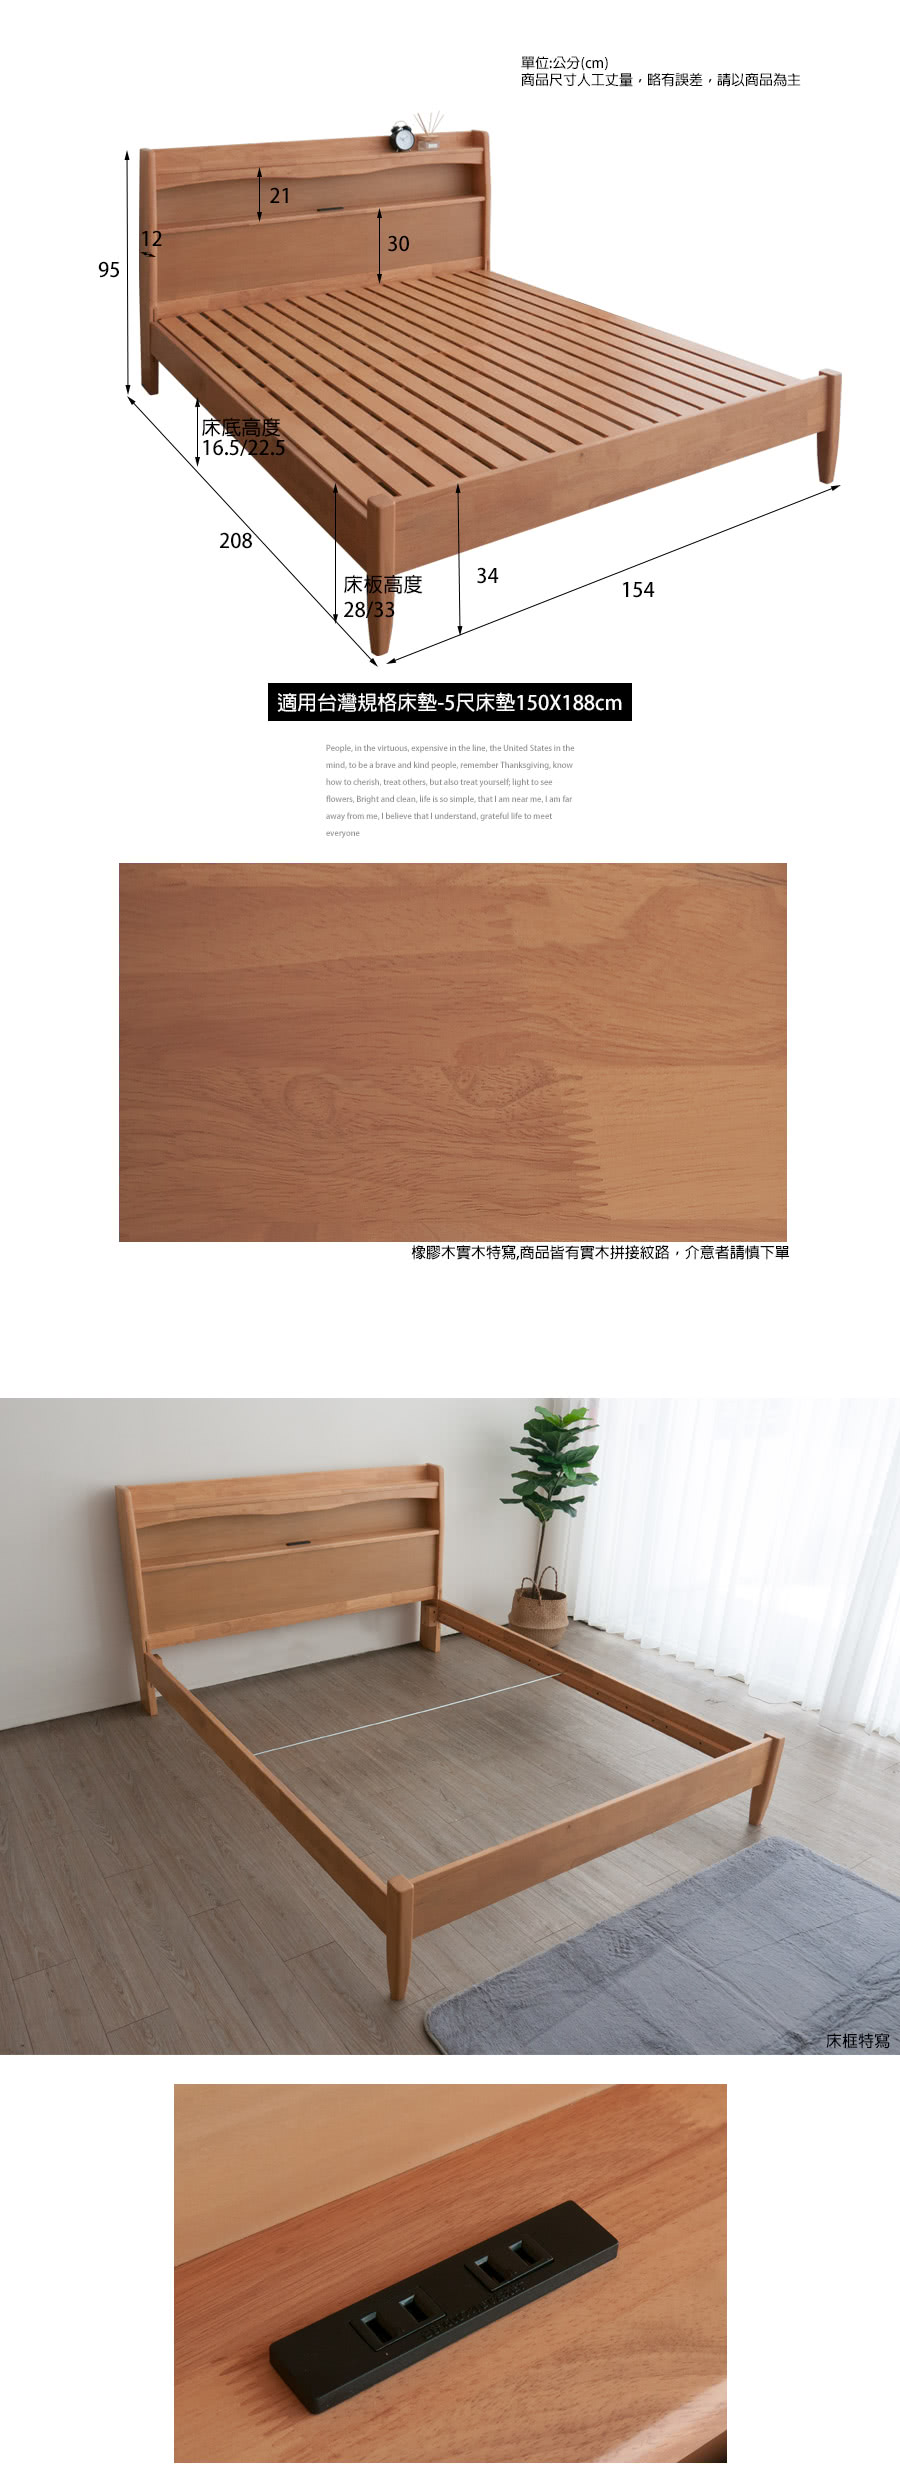 麗得傢居 宮崎5尺實木床架 標準雙人床架 雙人床台 床組(橡